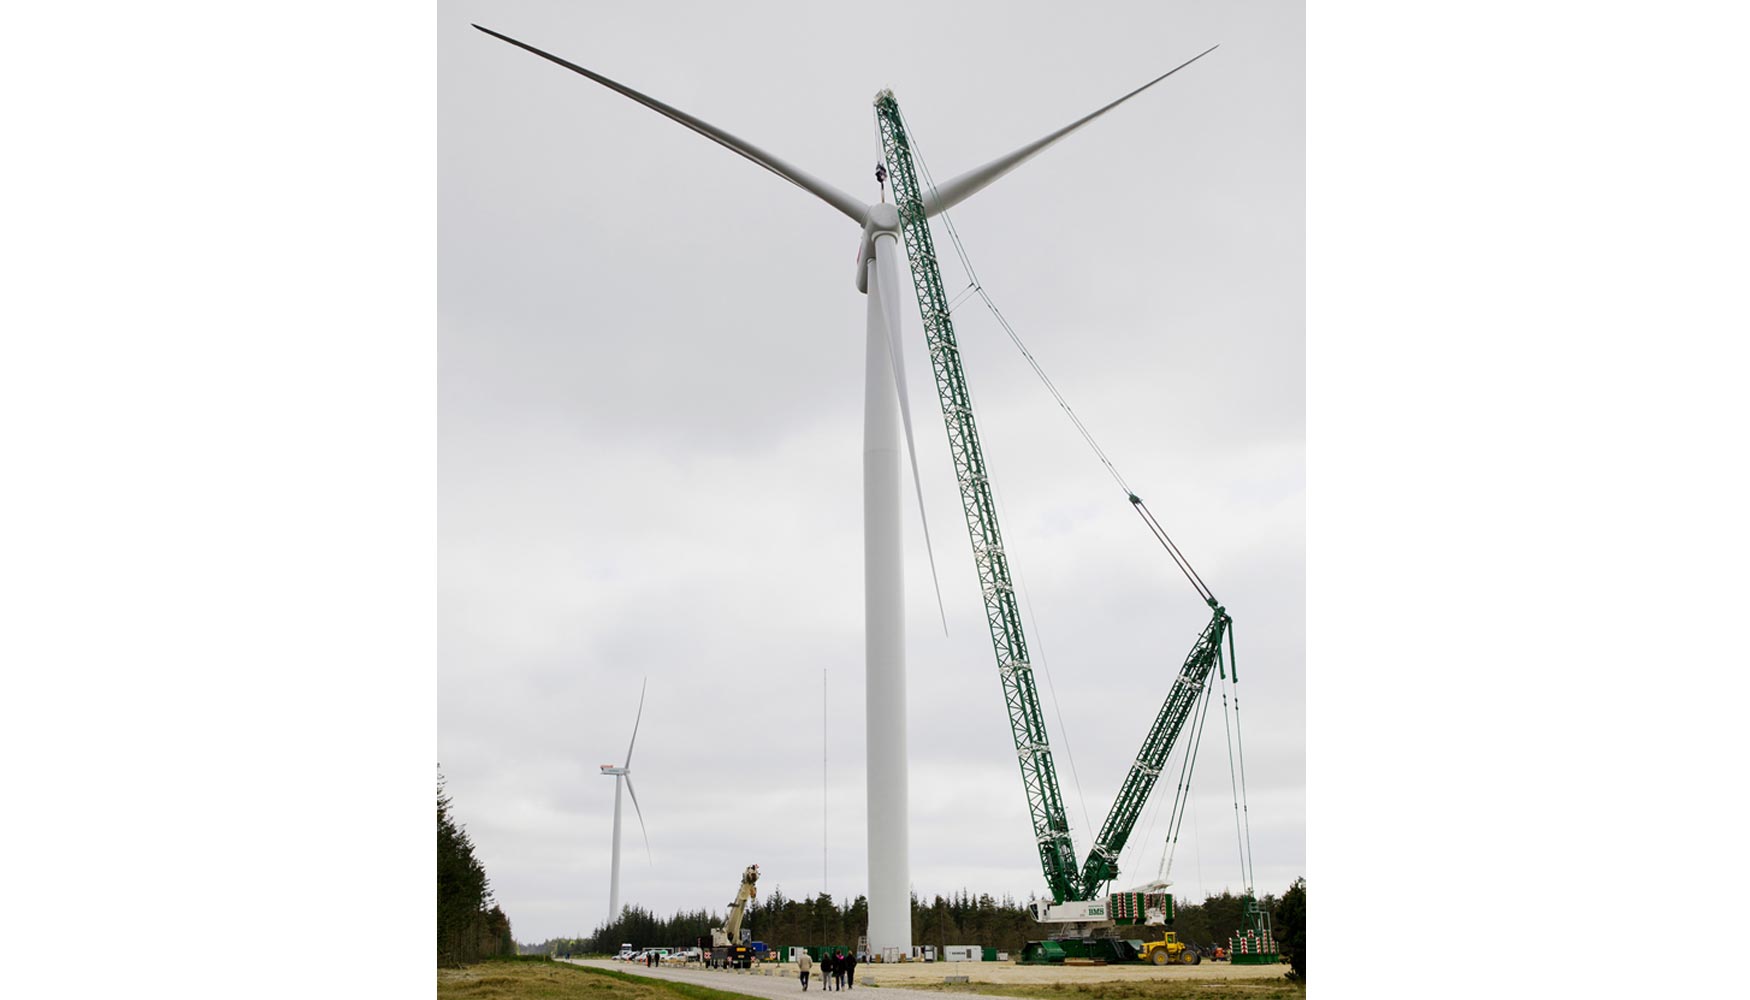 La nueva turbina elica offshore de Siemens contribuir en gran medida a reducir el coste nivelado de la electricidad offshore...